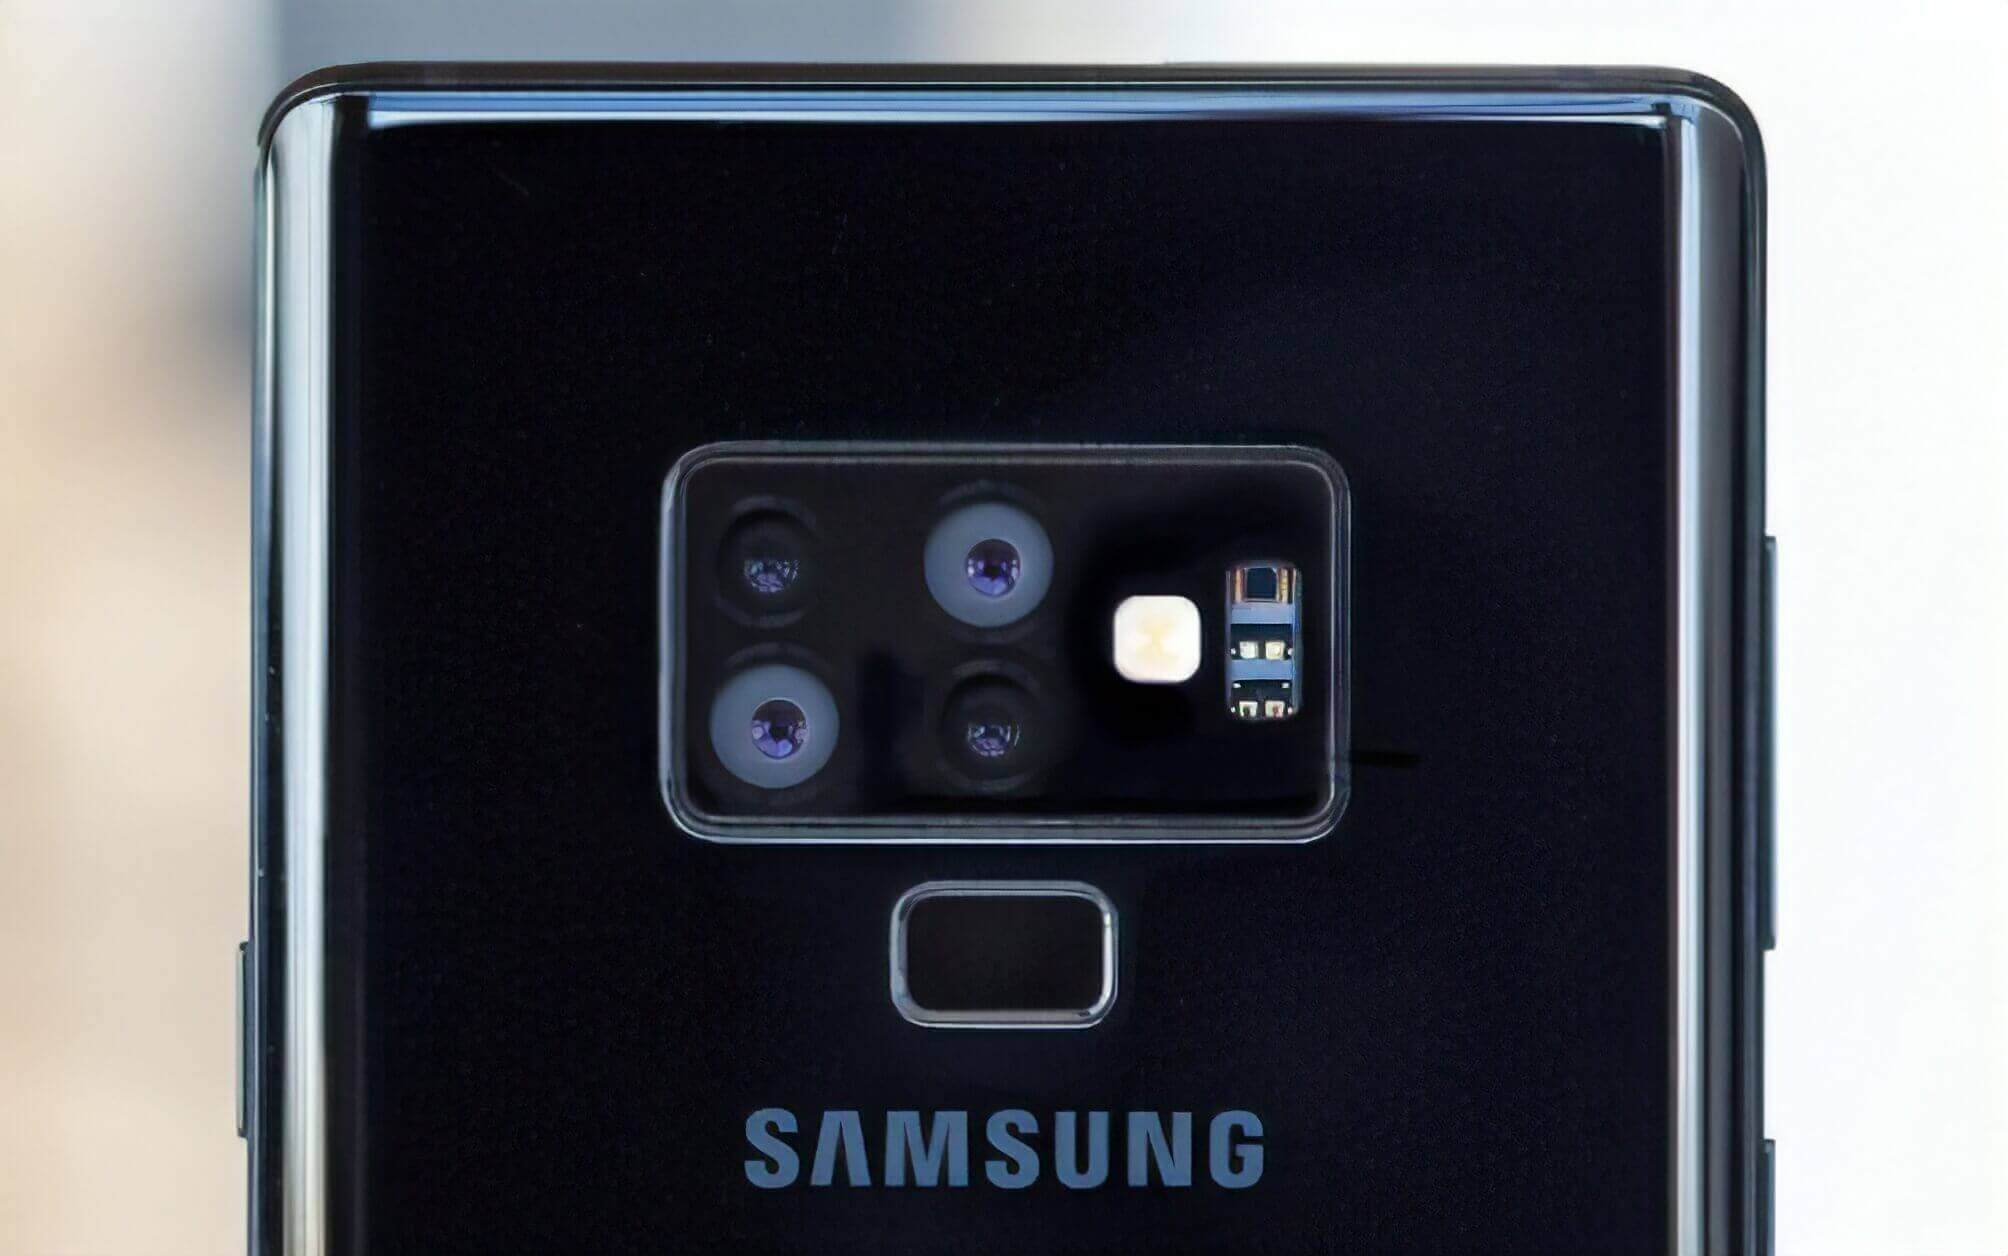 Samsung готовит смартфон с четырьмя модулями основной камеры